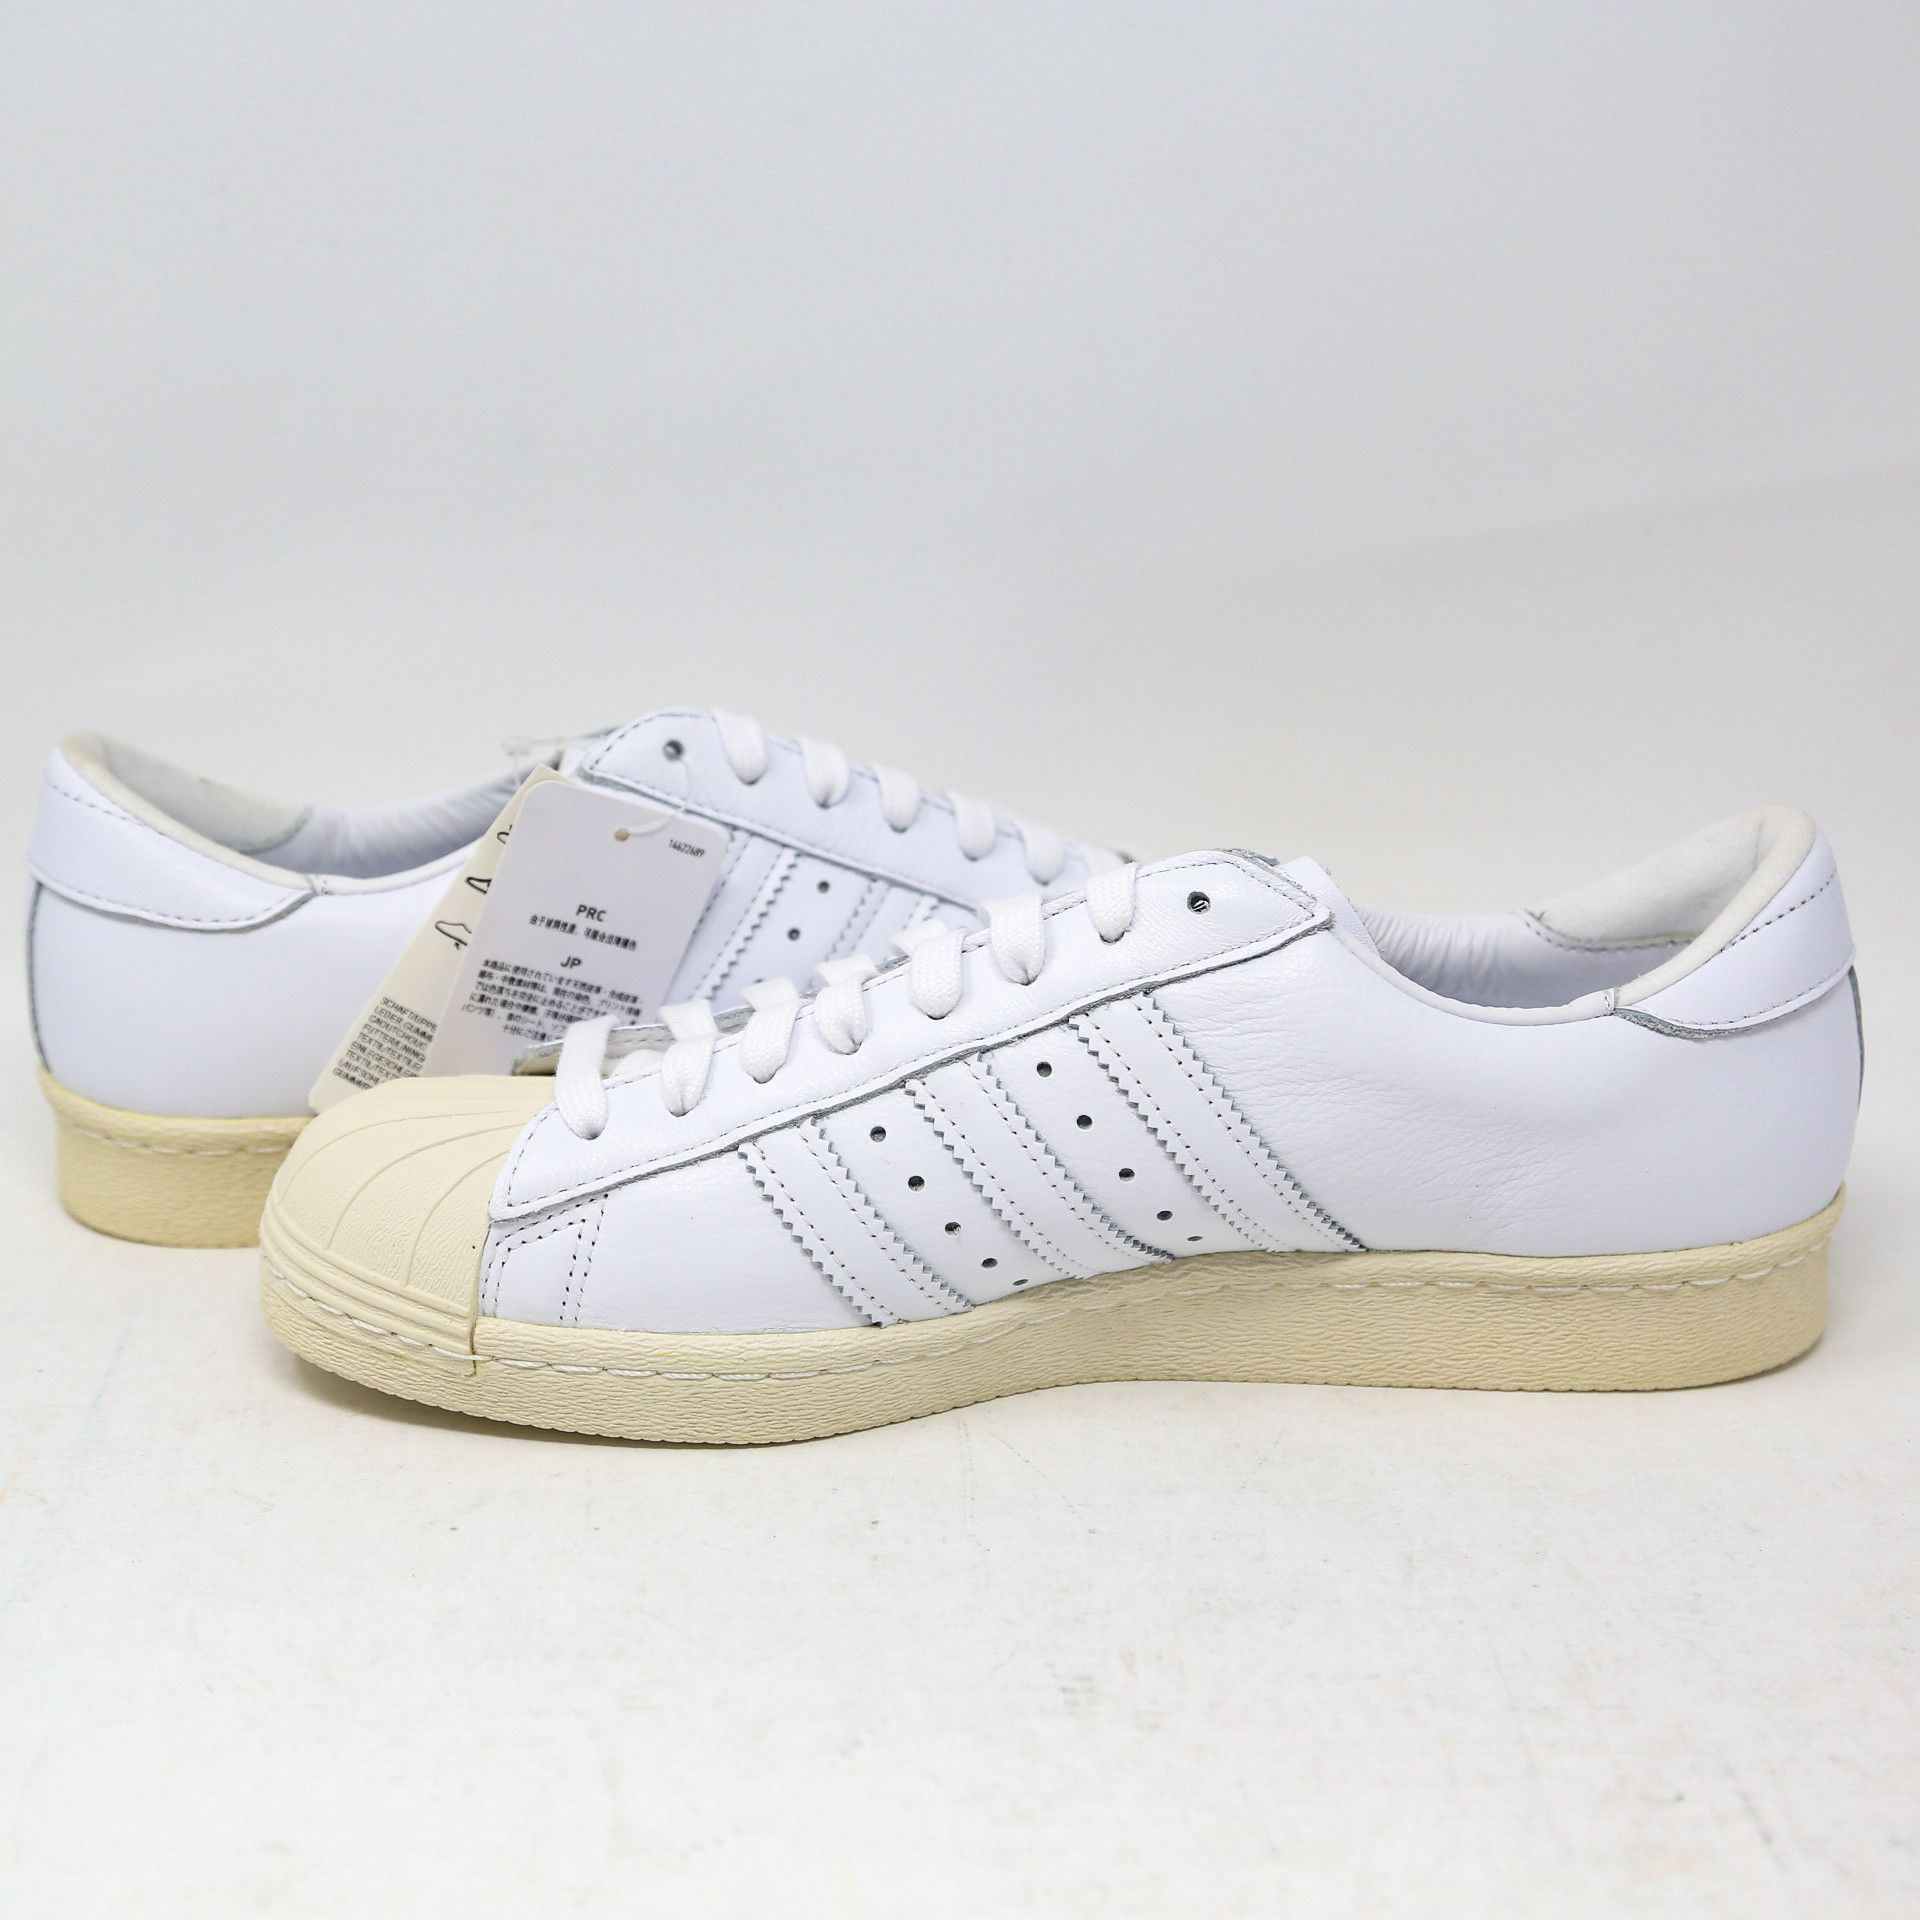 Adidas Superstar 80s Recon Off-White EE7392 Retro size 11 Size US 11 / EU 44 - 6 Thumbnail